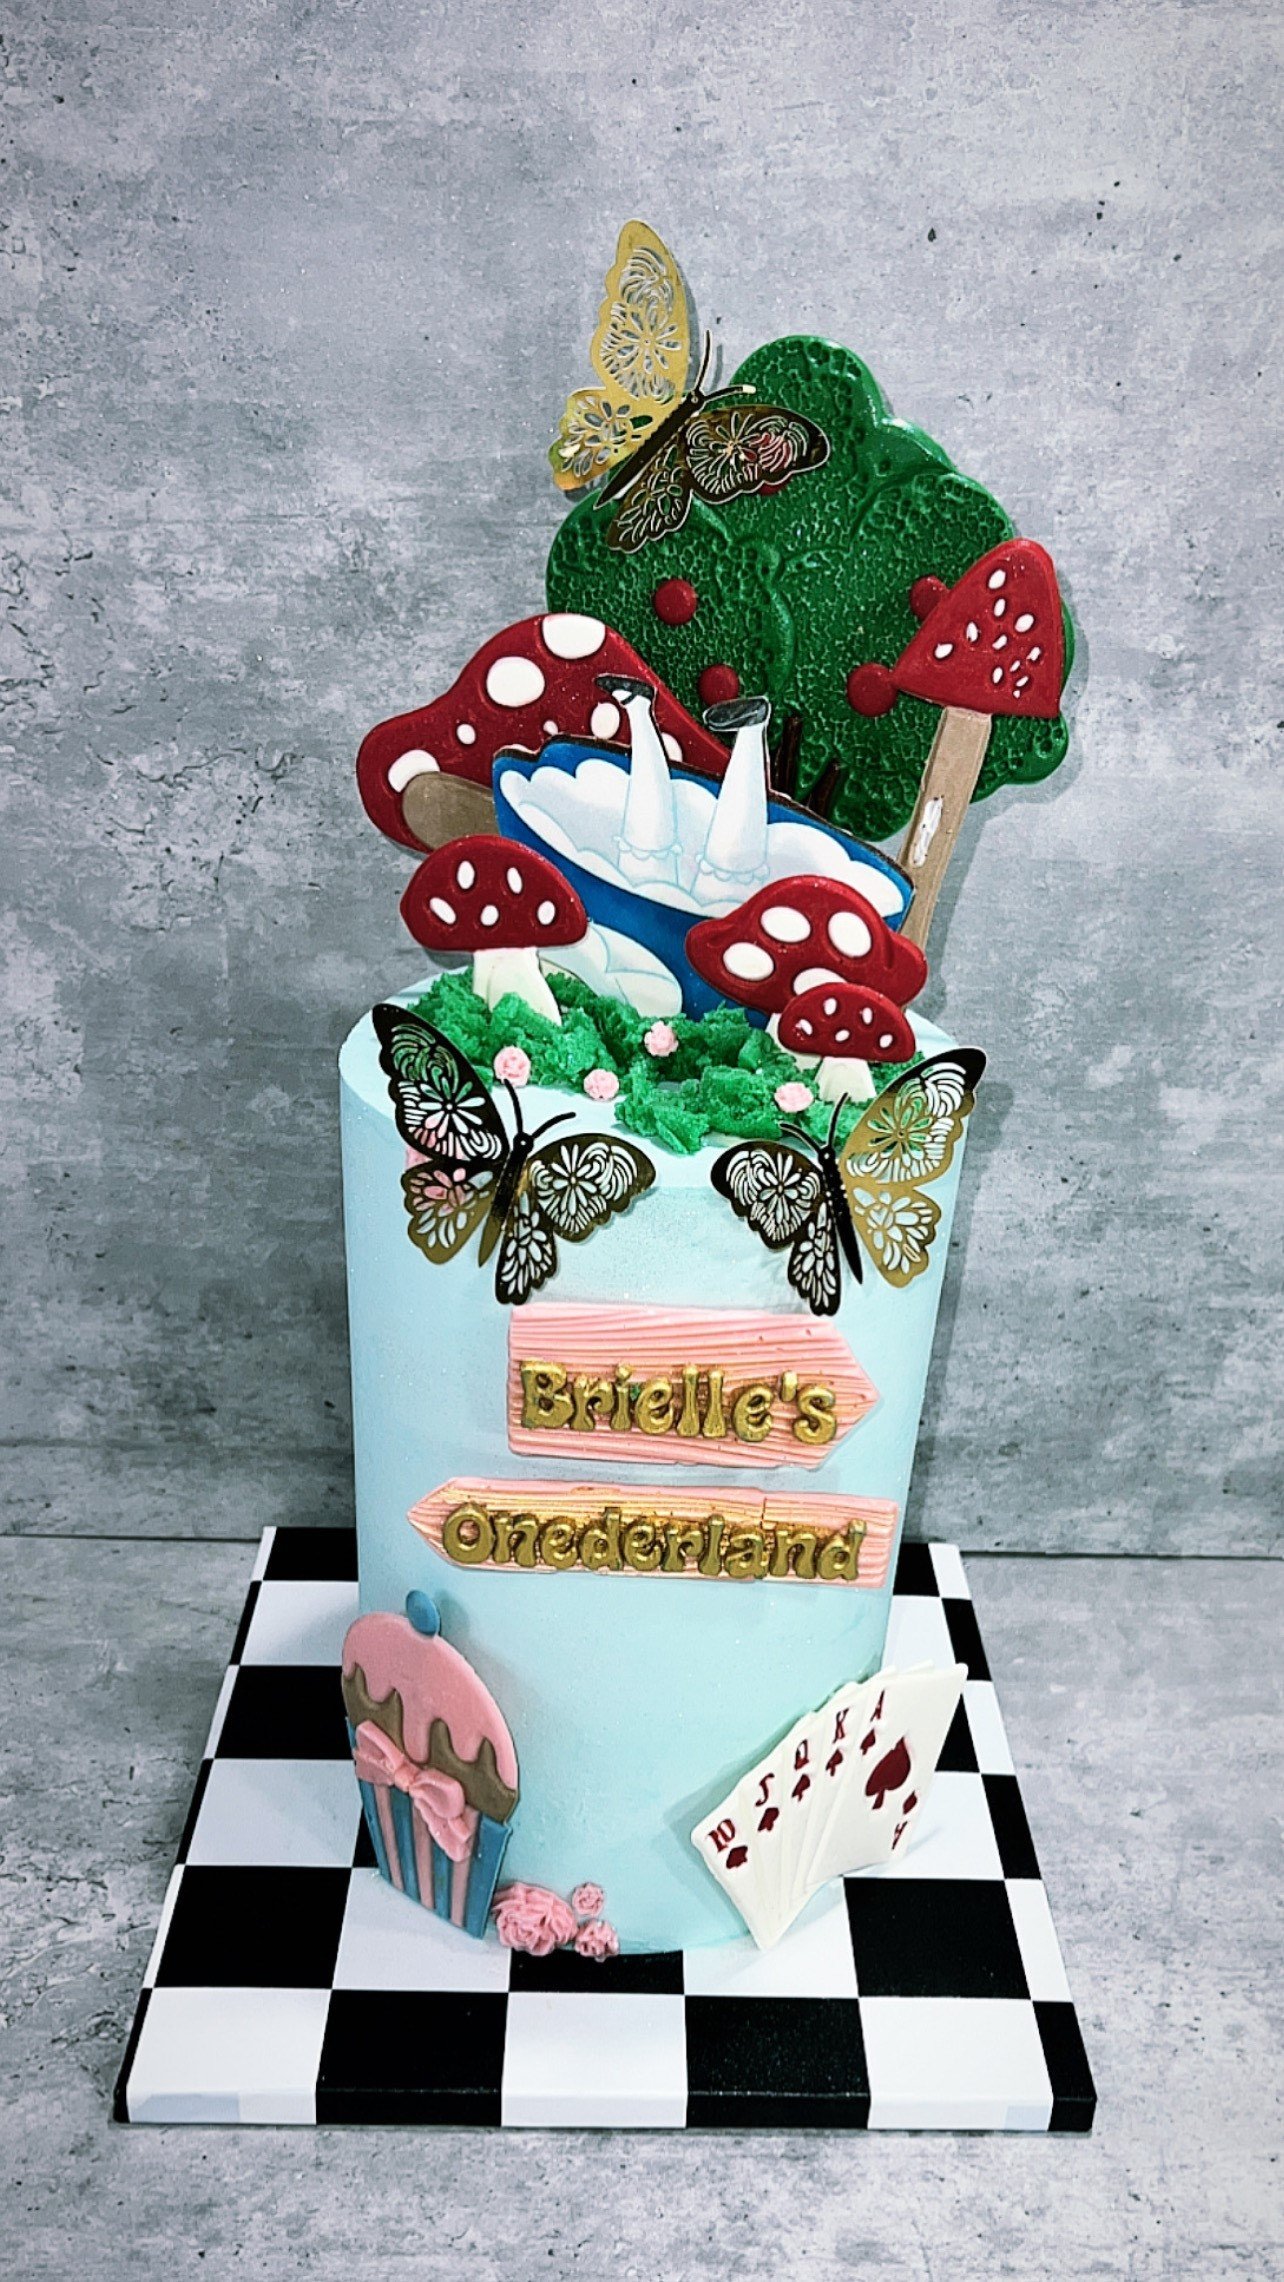 SimasBaking_custom_birthday_cake22.jpg